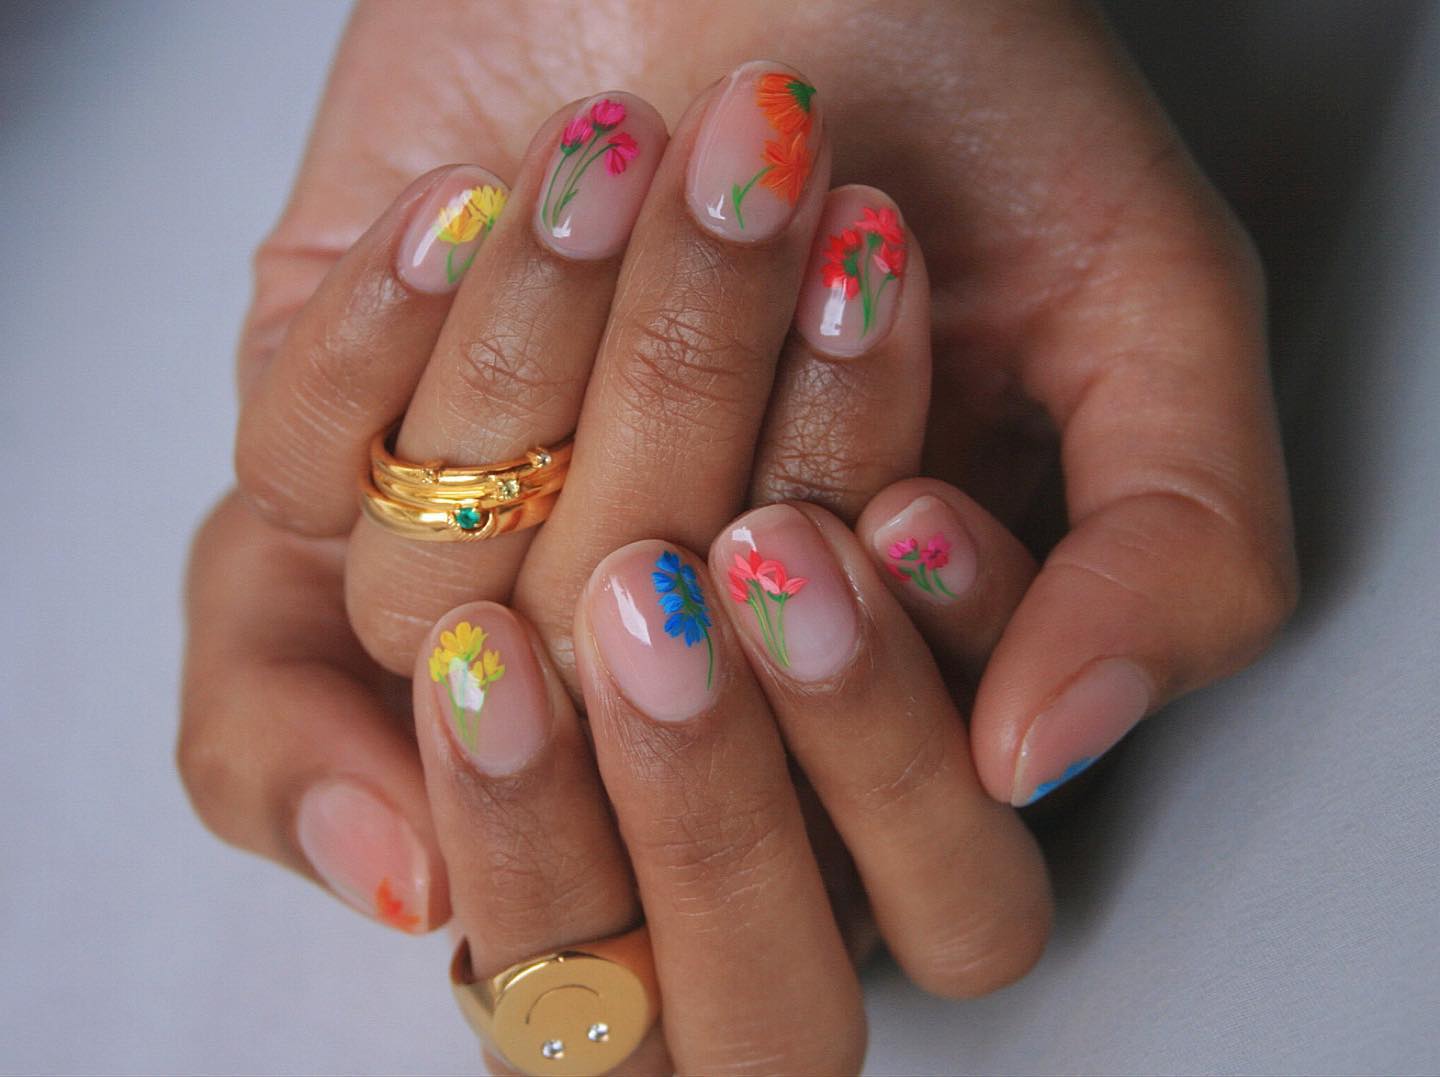 @imarninails colourful, floral nail art